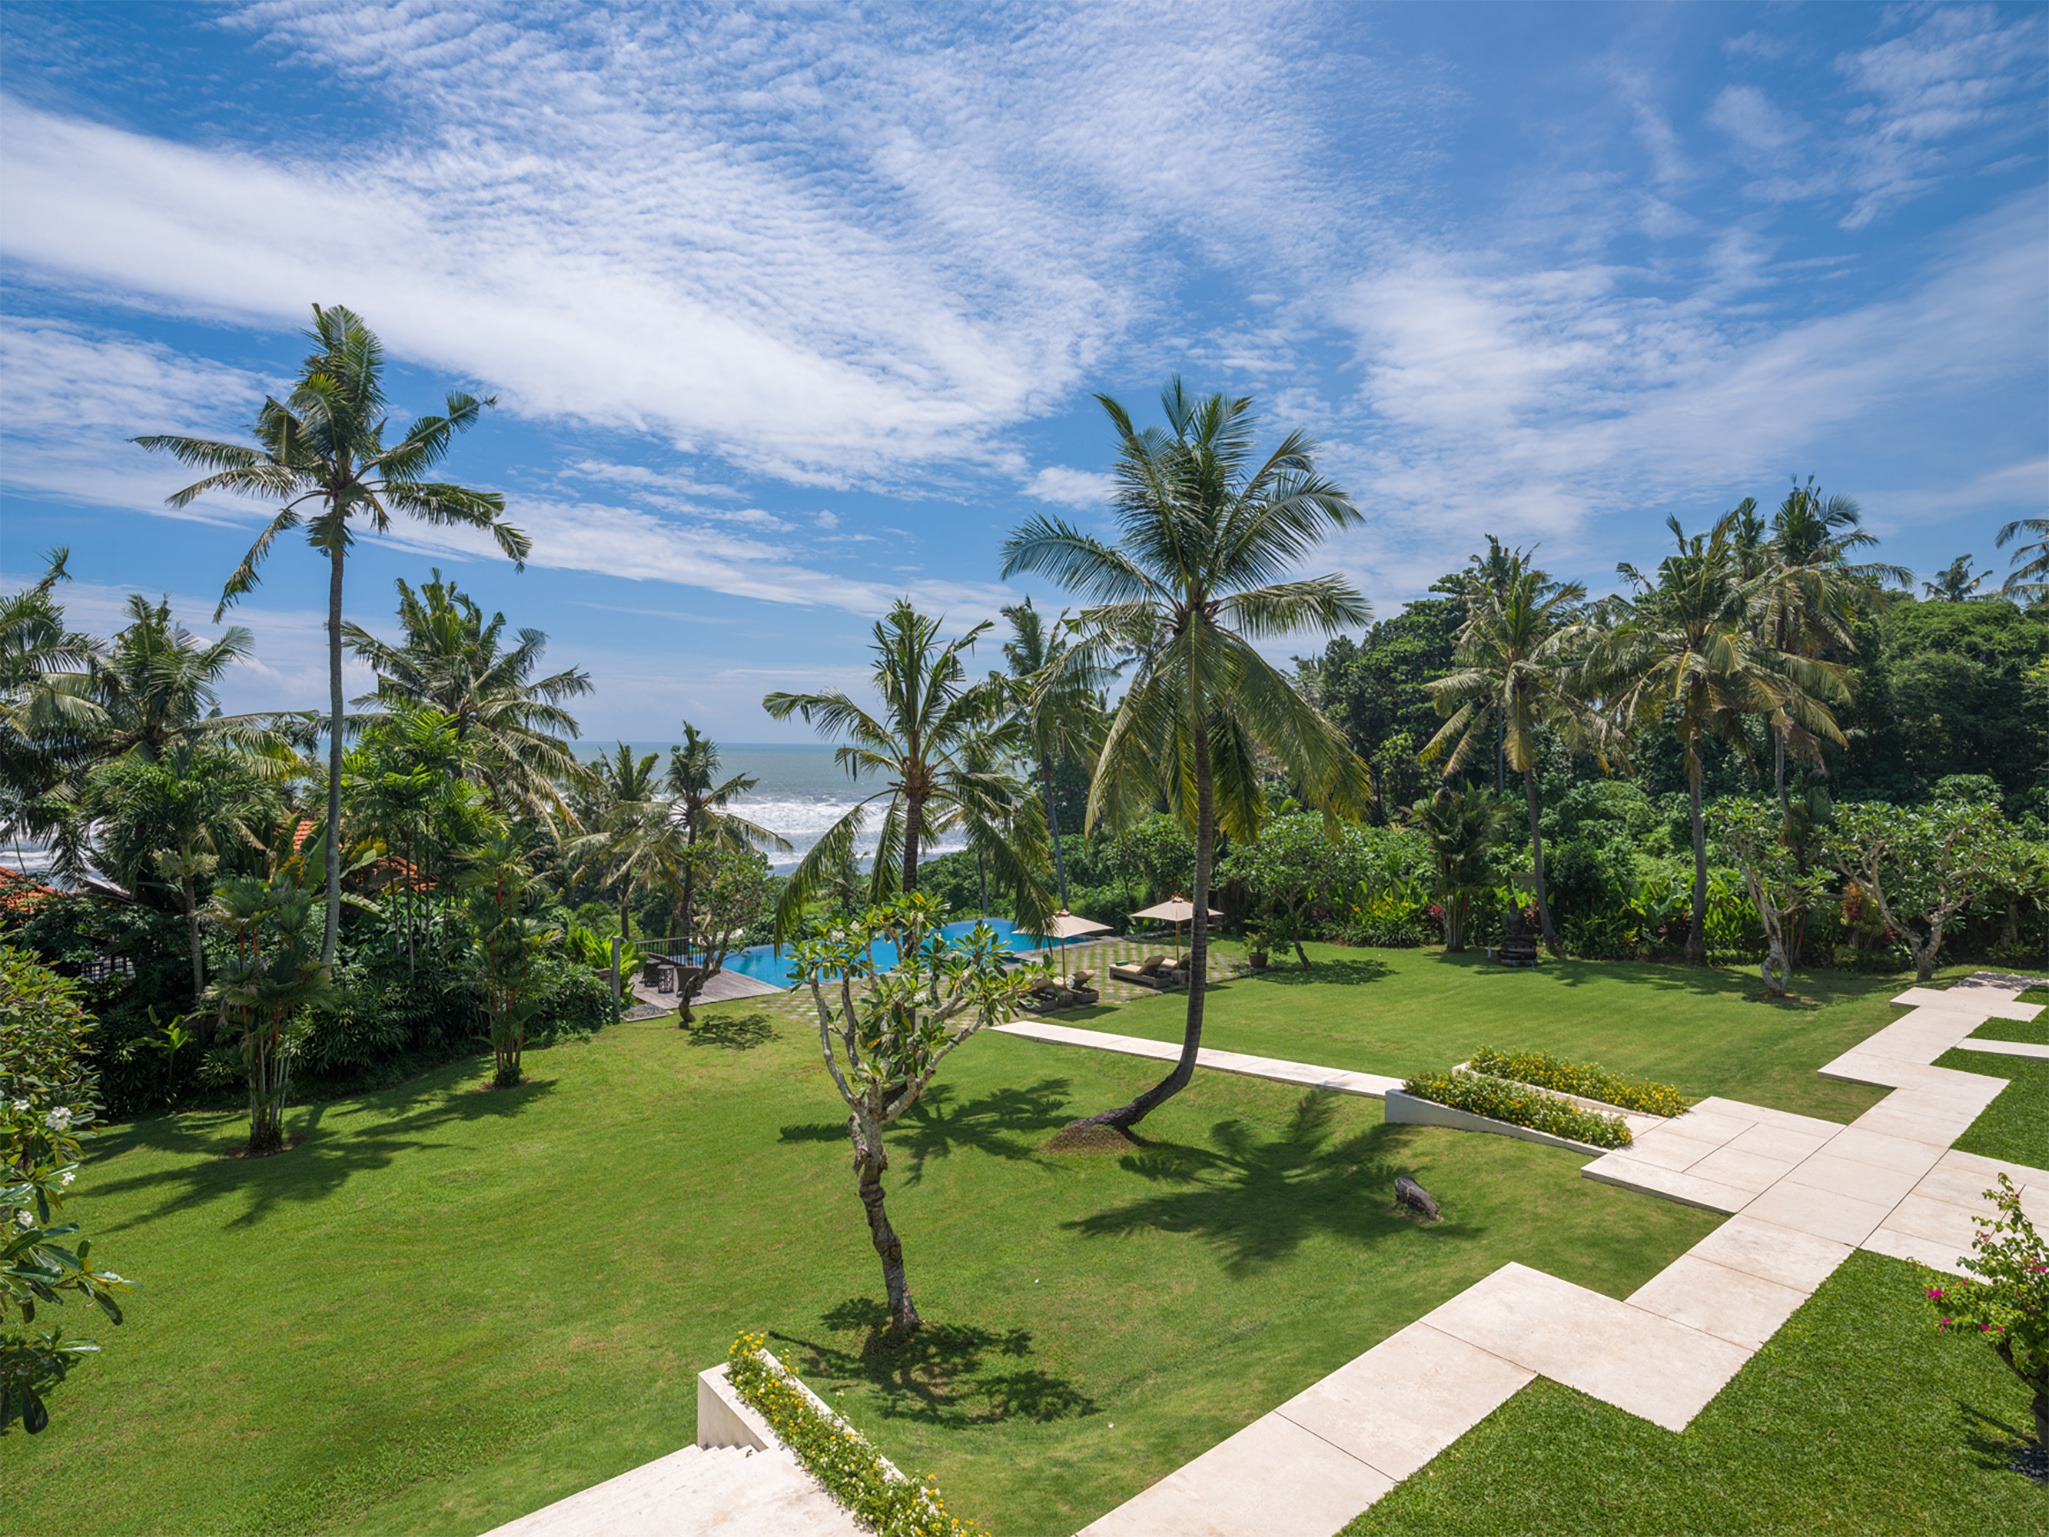 Villa Kailasha - Tropical backdrop - Villa Kailasha, Tabanan, Bali